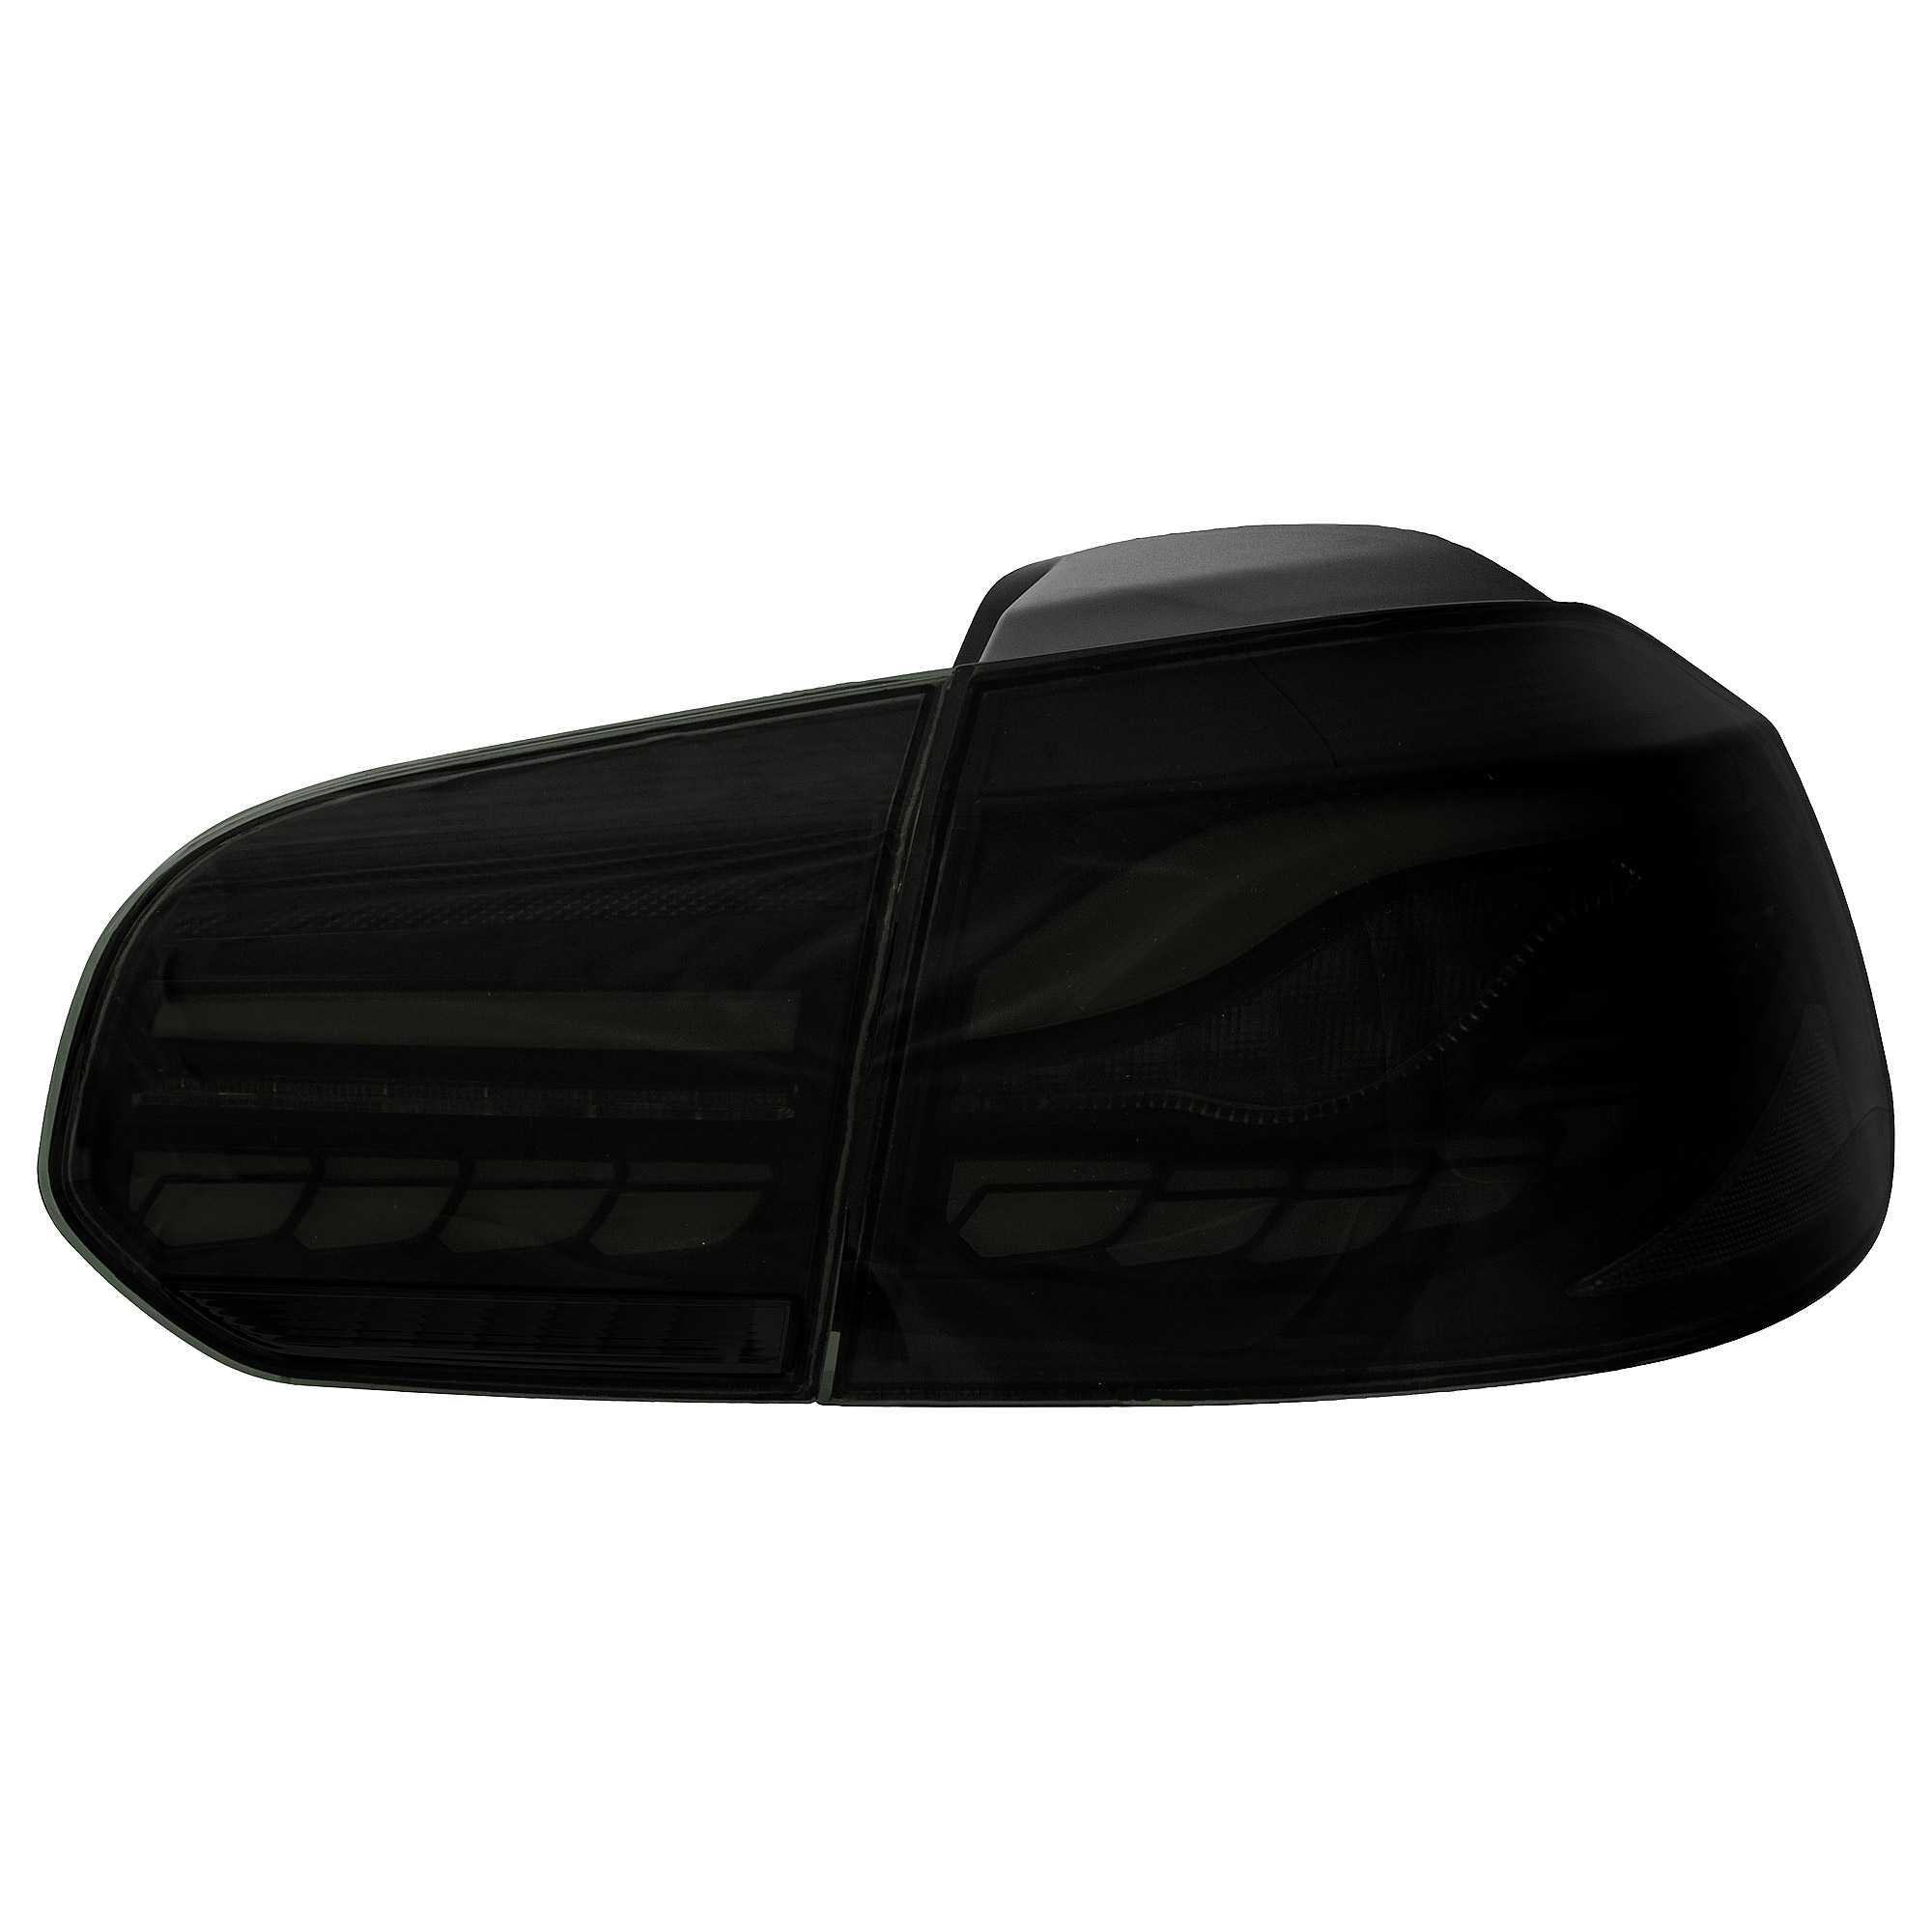 OLED Rückleuchten dynamisch Blinker für VW Golf 6 Bj. 08-13 smoke schwarz